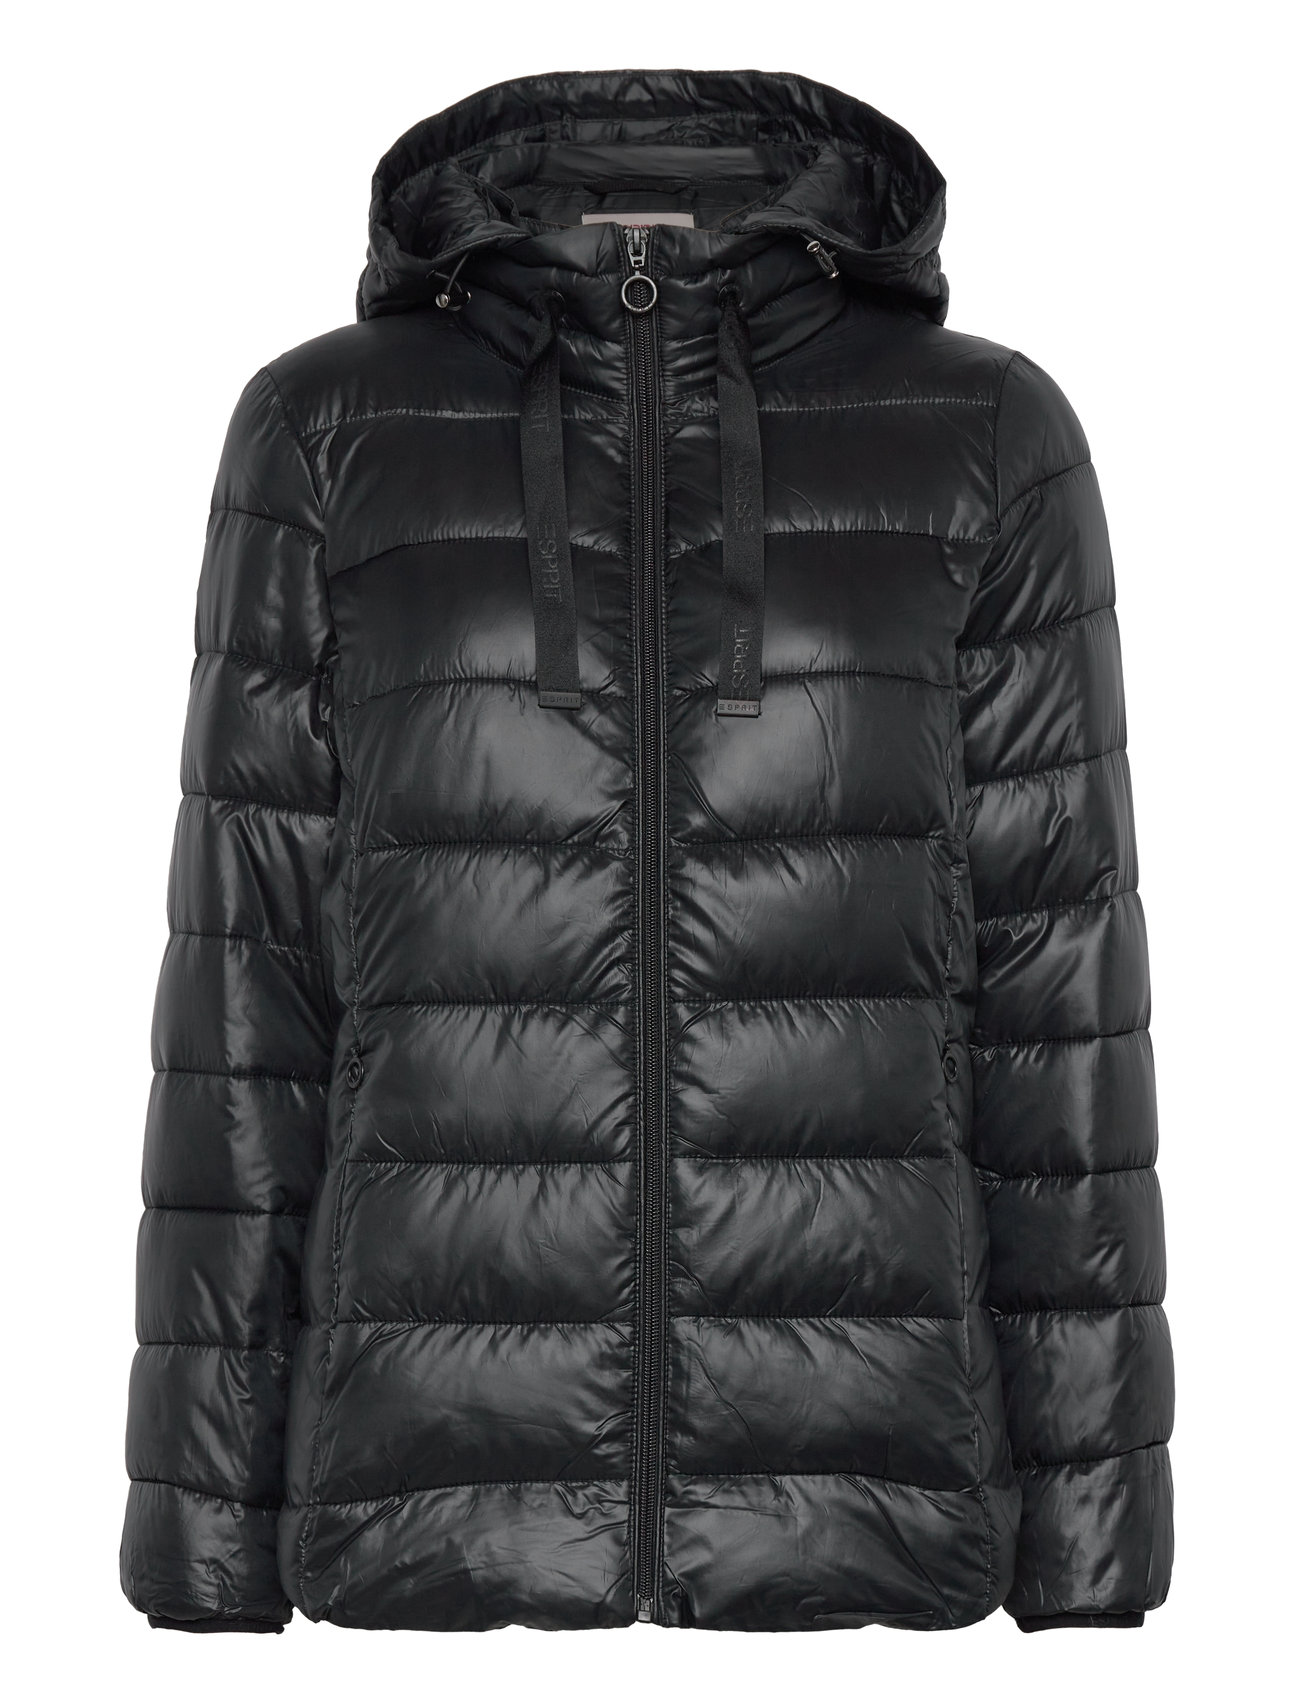 Esprit Casual Jackets Outdoor Woven - 674 kr. Køb jakker fra Esprit Casual online på Boozt.com. Hurtig levering nem retur